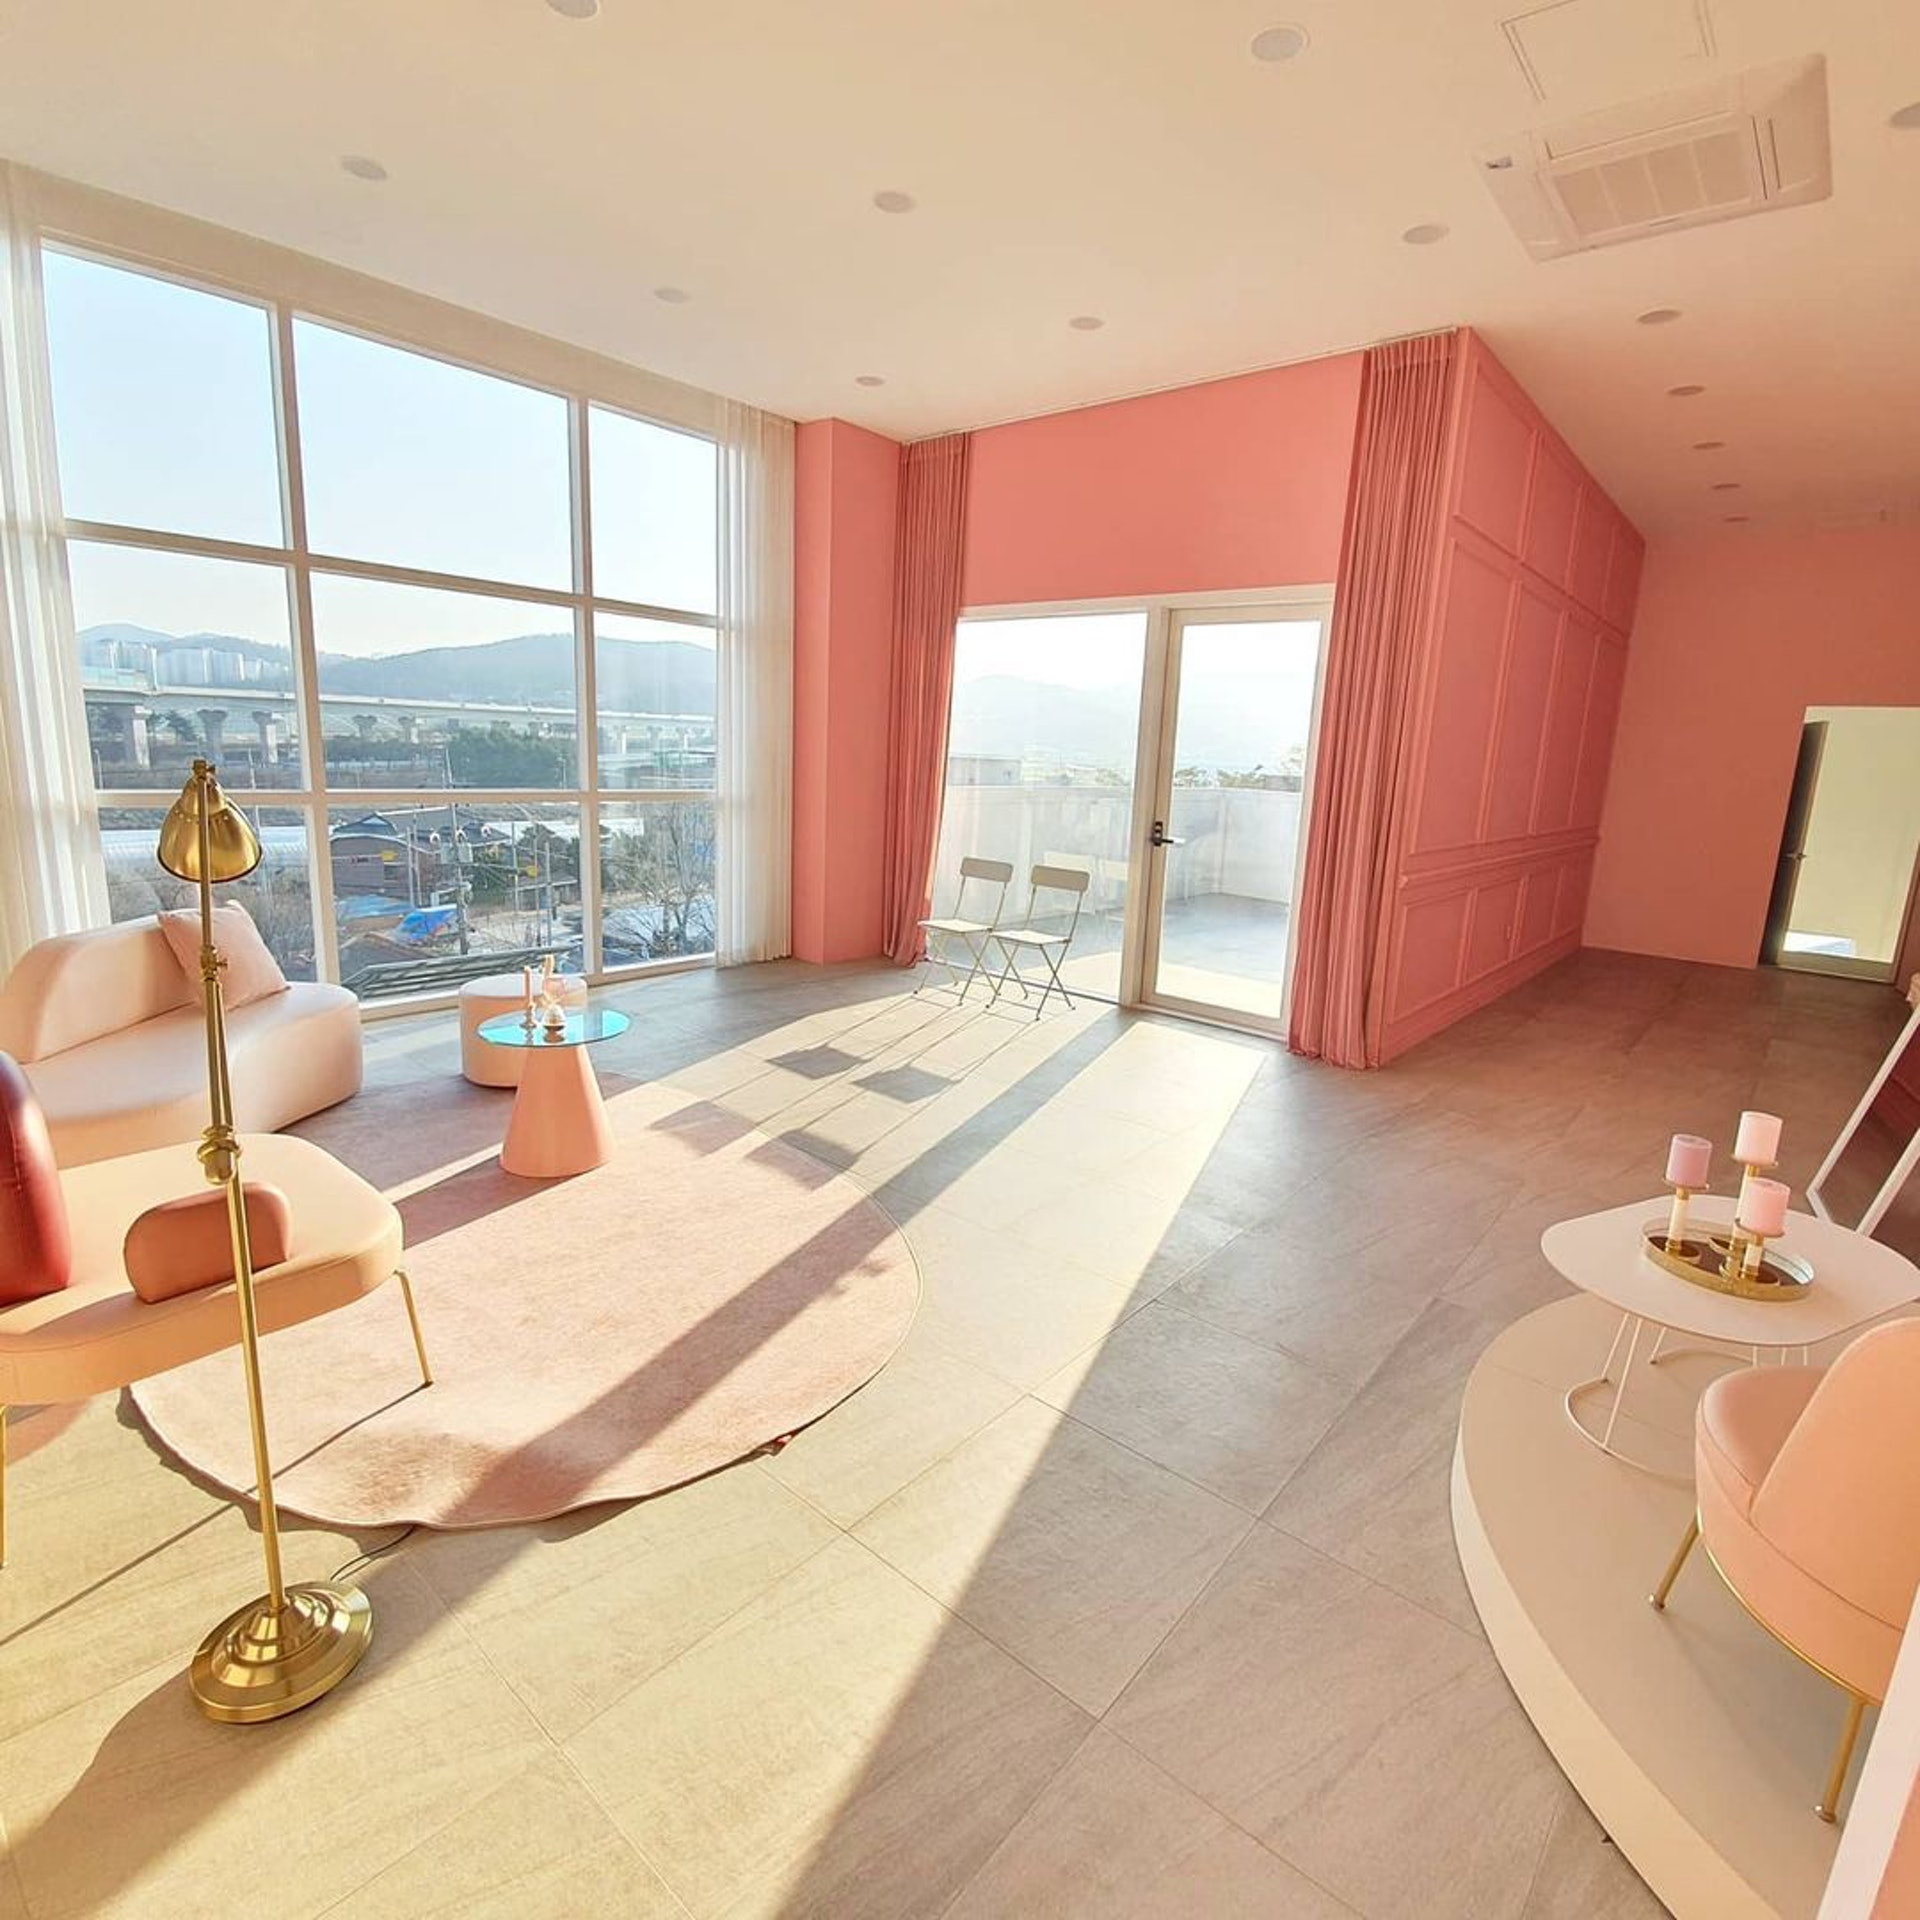 Một căn phòng khác được thiết kế với tông màu hồng kẹo ngọt siêu lãng mạn, ngập tràn ánh nắng cho nữ chủ nhân tương lai.